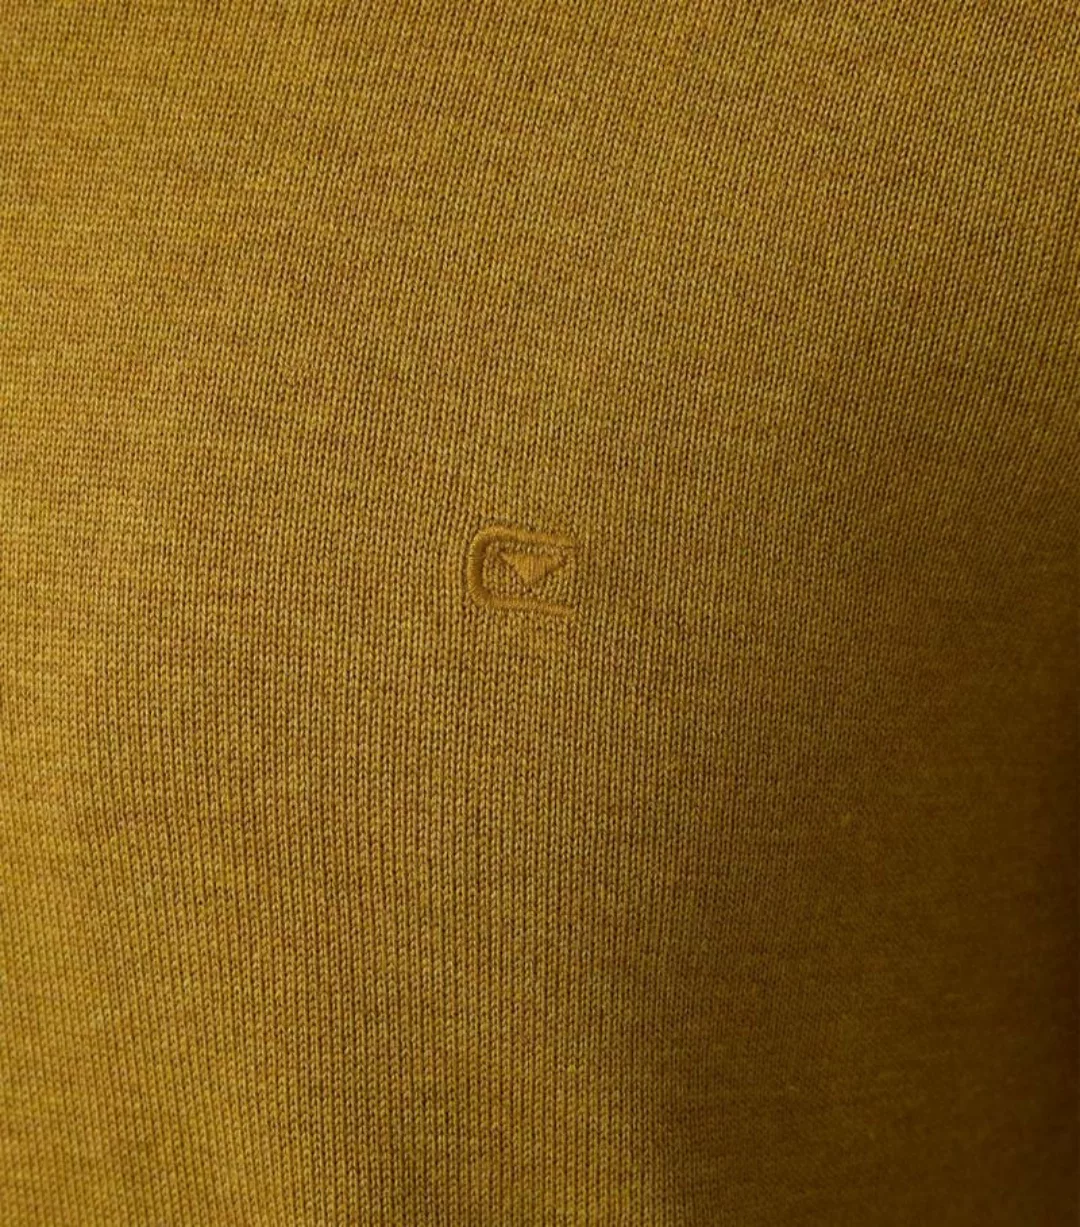 Casa Moda Pullover V-Ausschnitt Gelb  - Größe 3XL günstig online kaufen